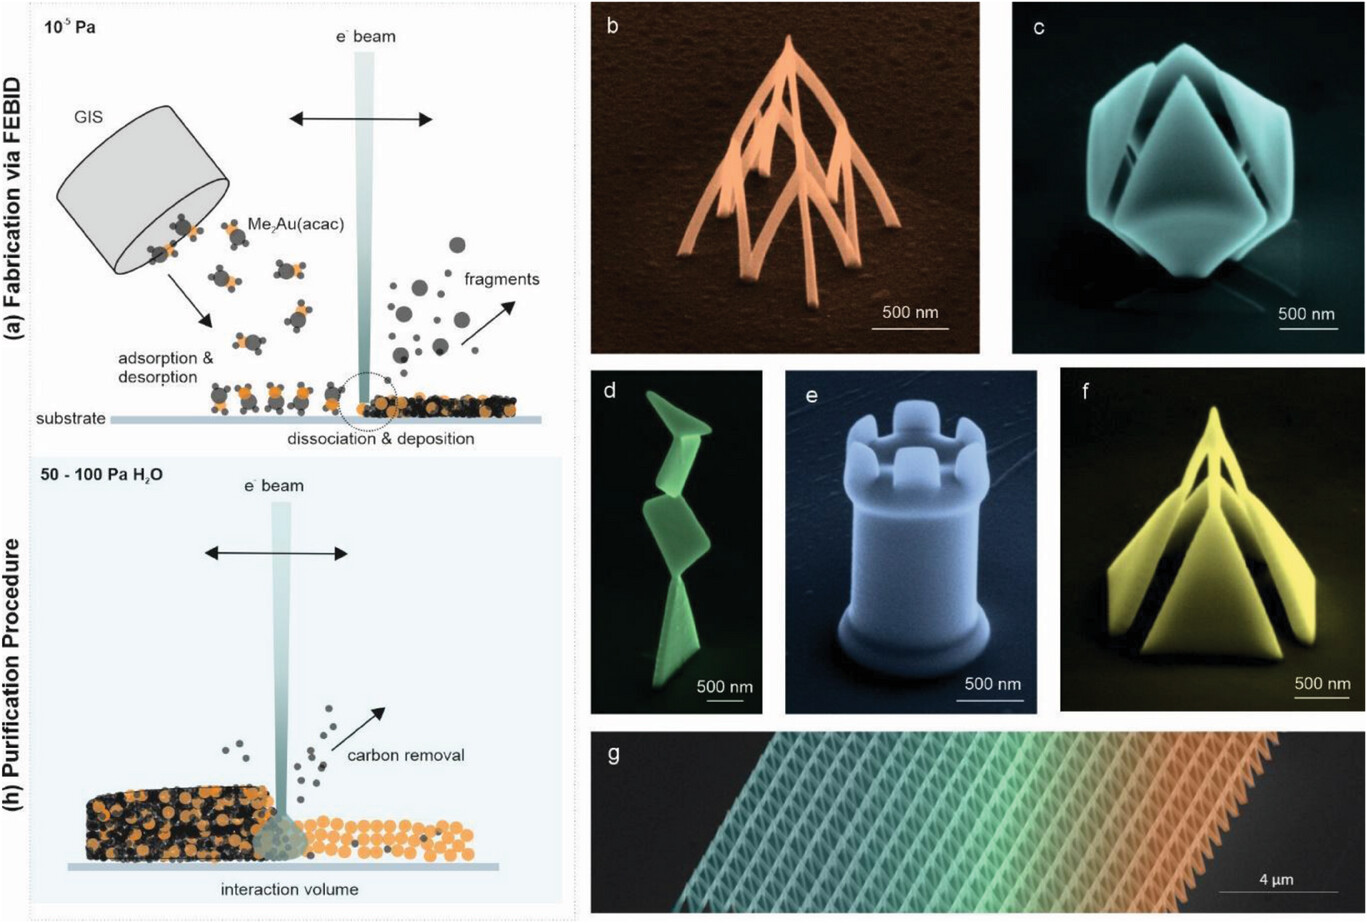 Chế tạo, tinh chế và khả năng 3D của cấu trúc nano plasmonic